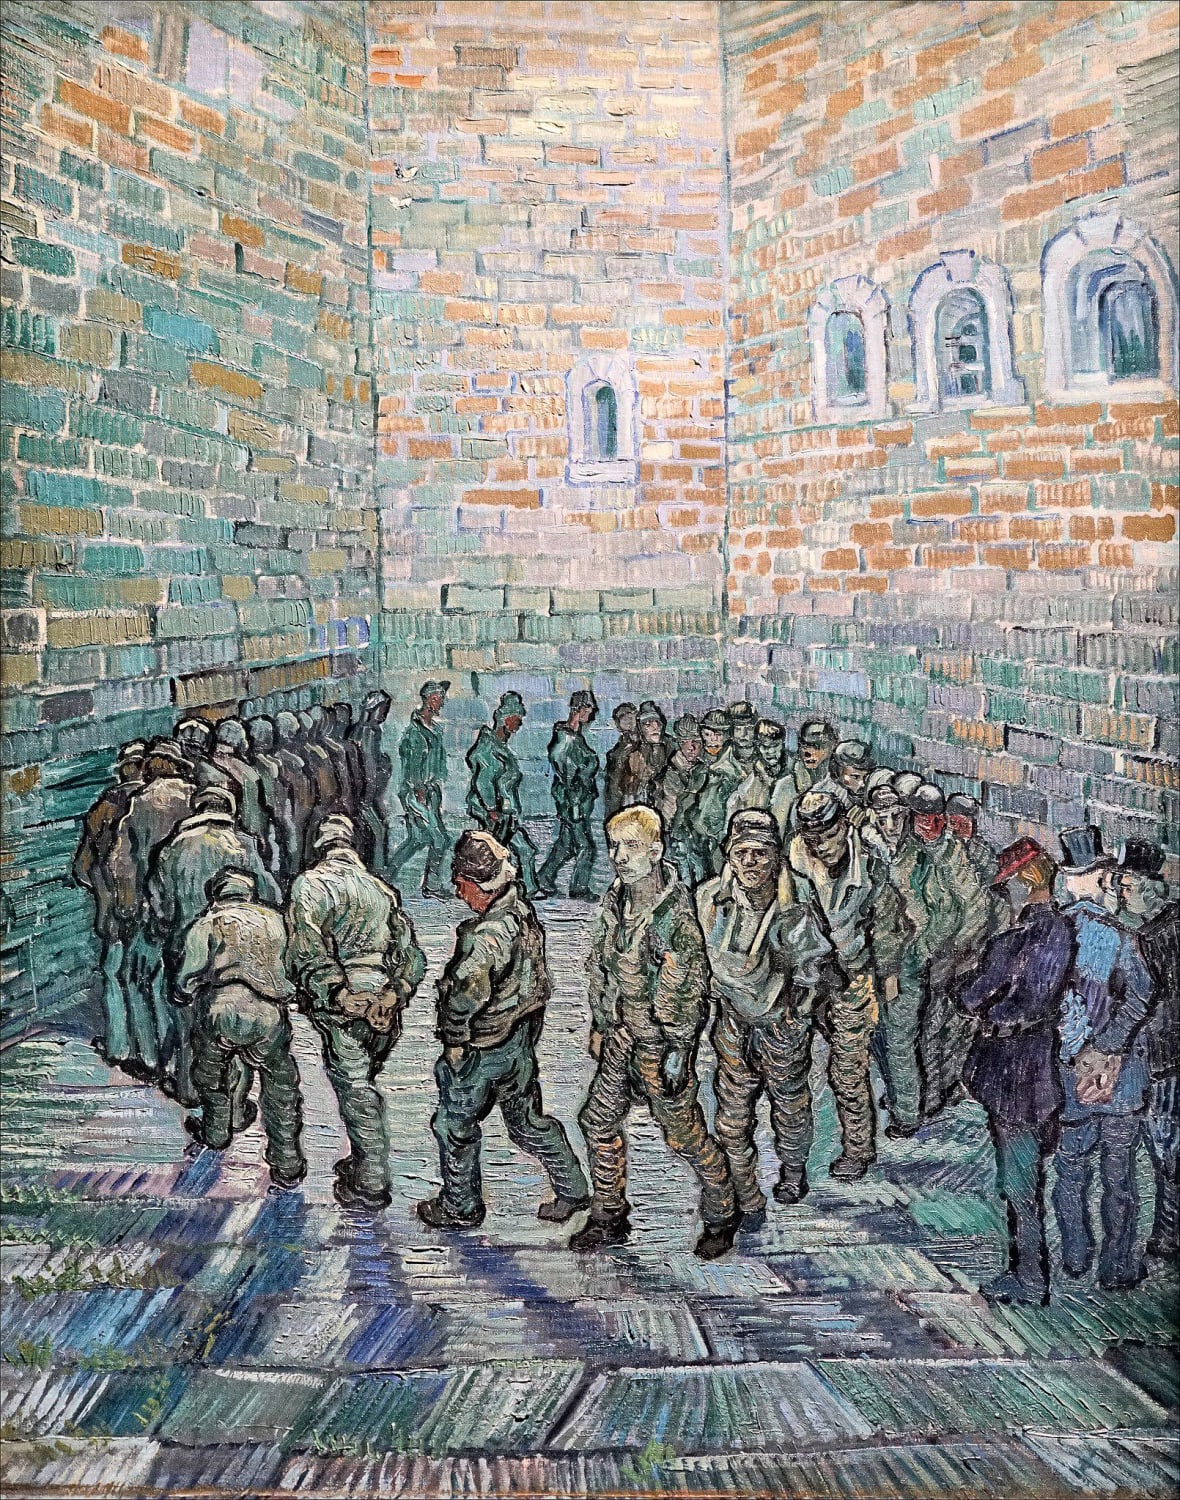 Vincent van Gogh, Prisoners' Round (after Gustave Doré), 1890